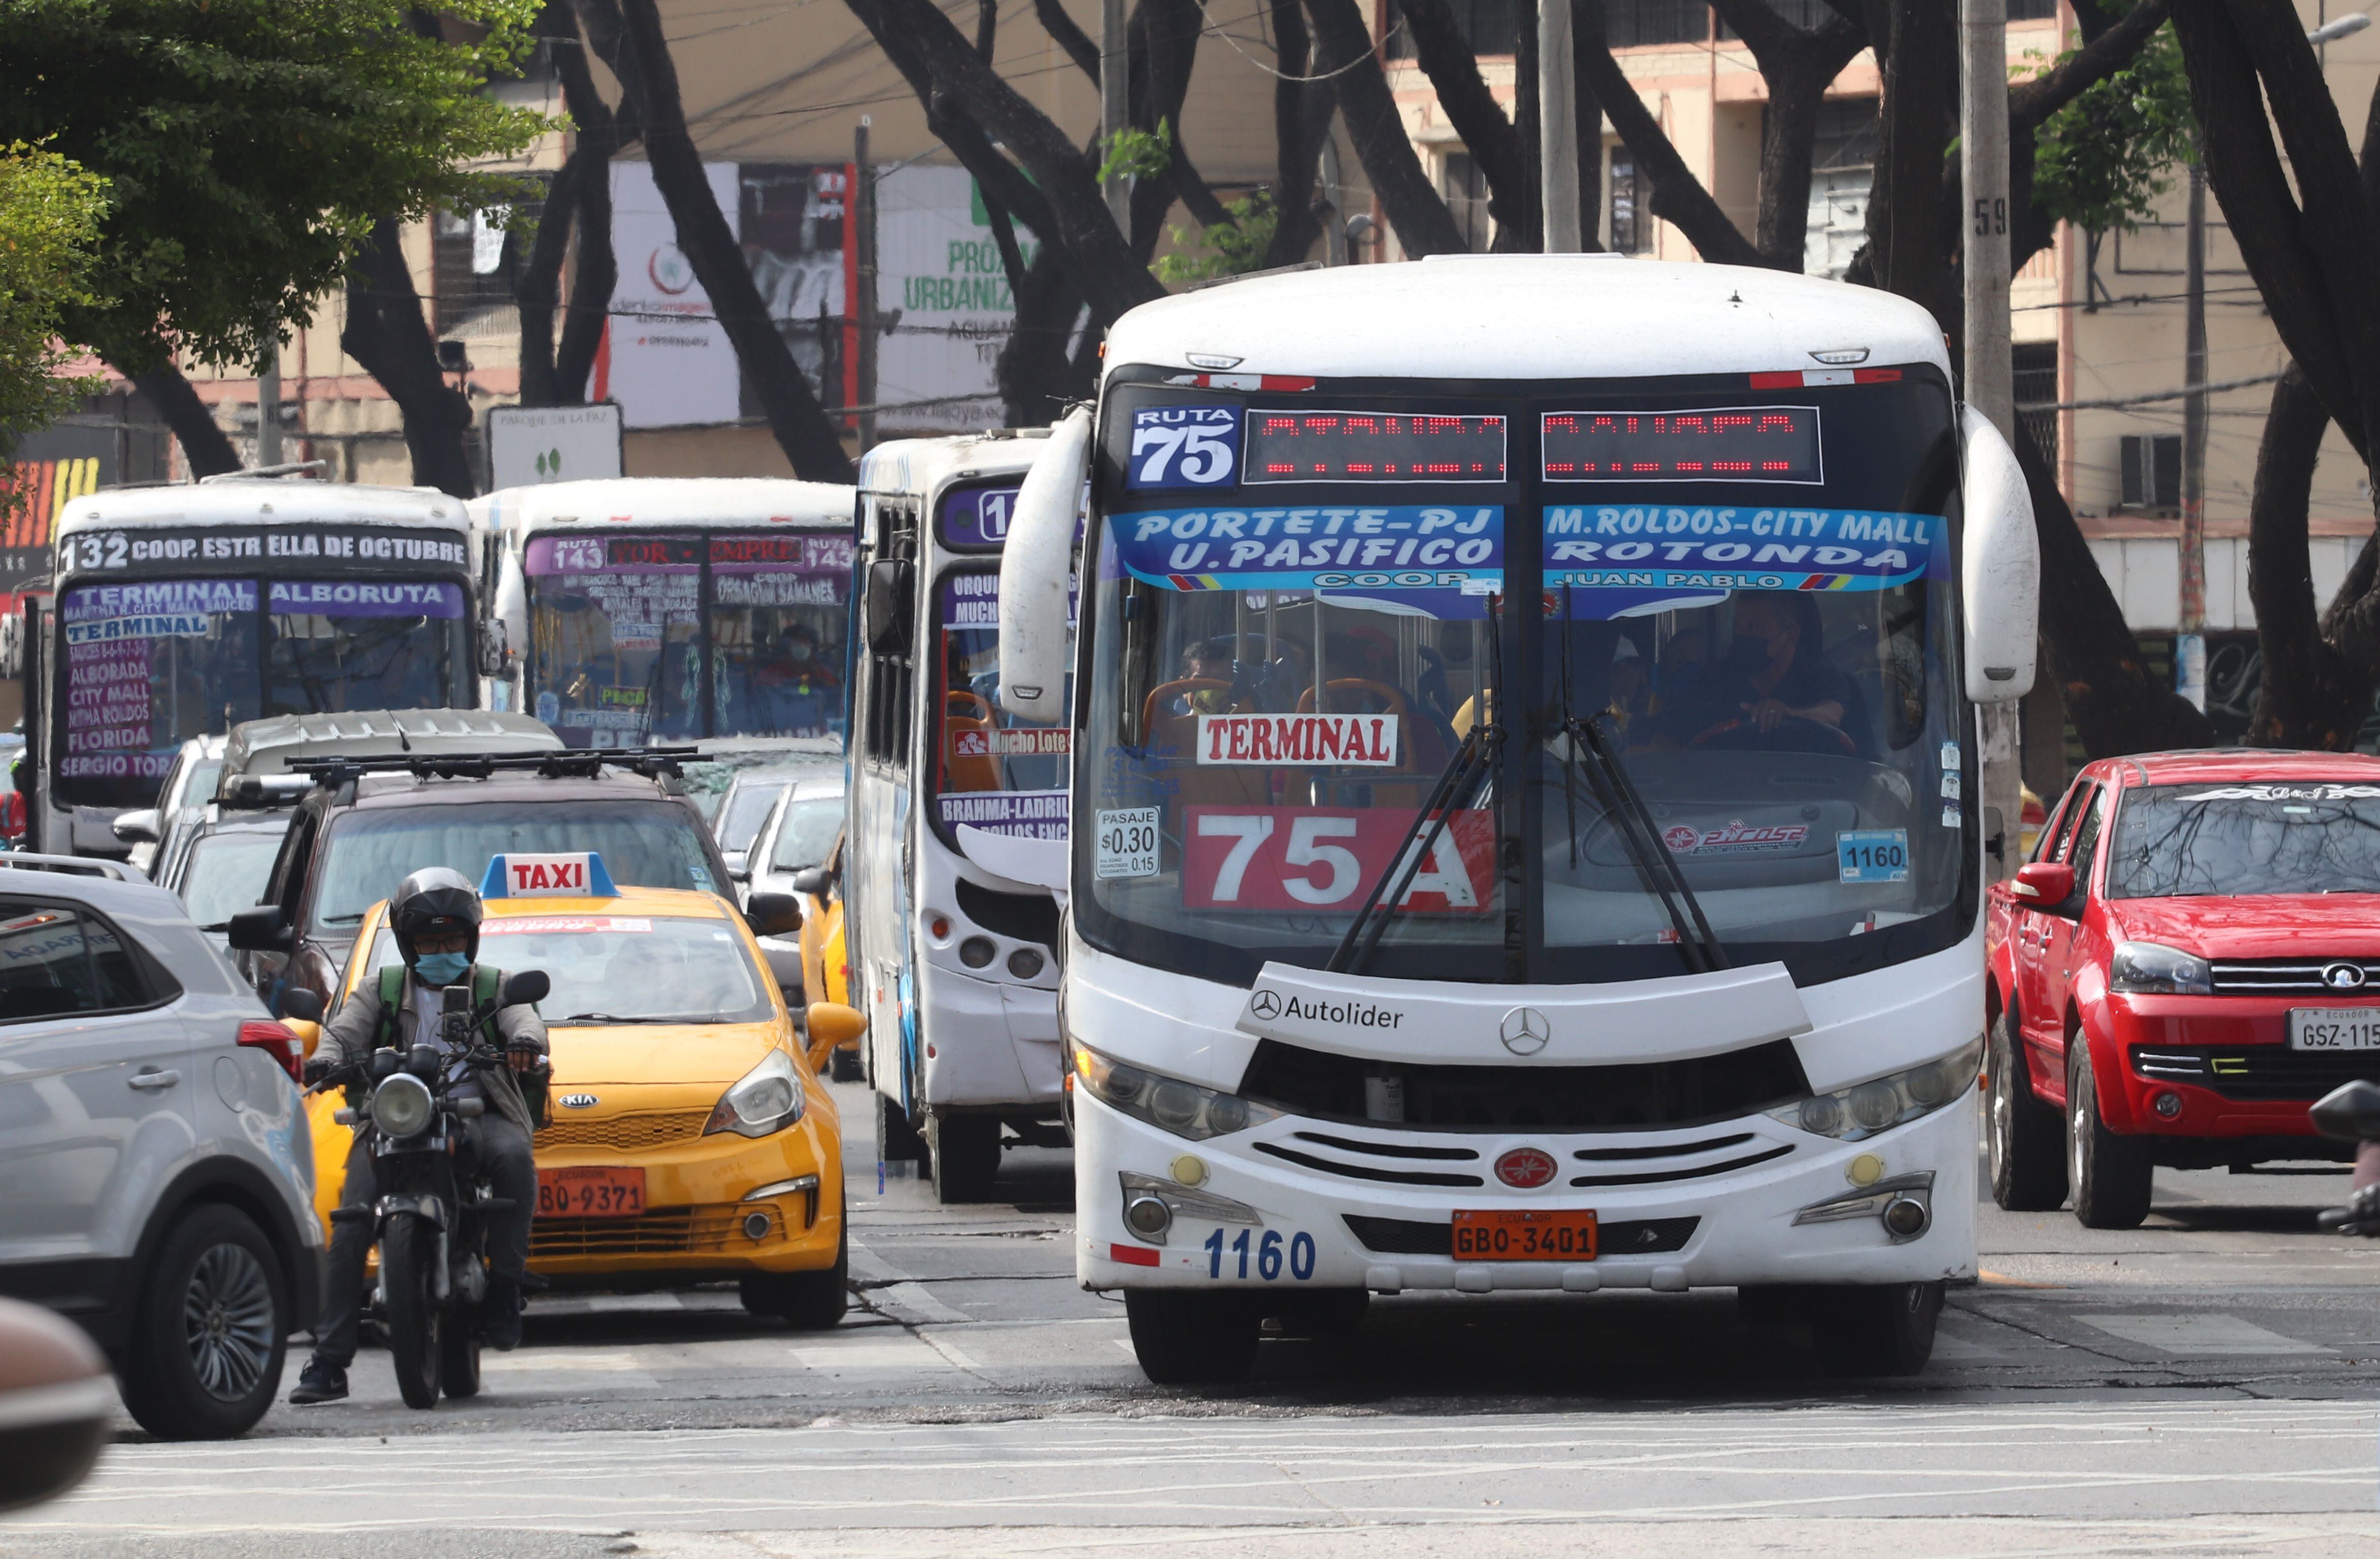 Conductores y dueños de buses de transporte público en Guayaquil aseguran que todavía no llegan a la esperada reactivación económica. Uno de sus limitantes es el aforo del 50 % con el que aún trabajan, dicen. Foto: Ronald Cedeño